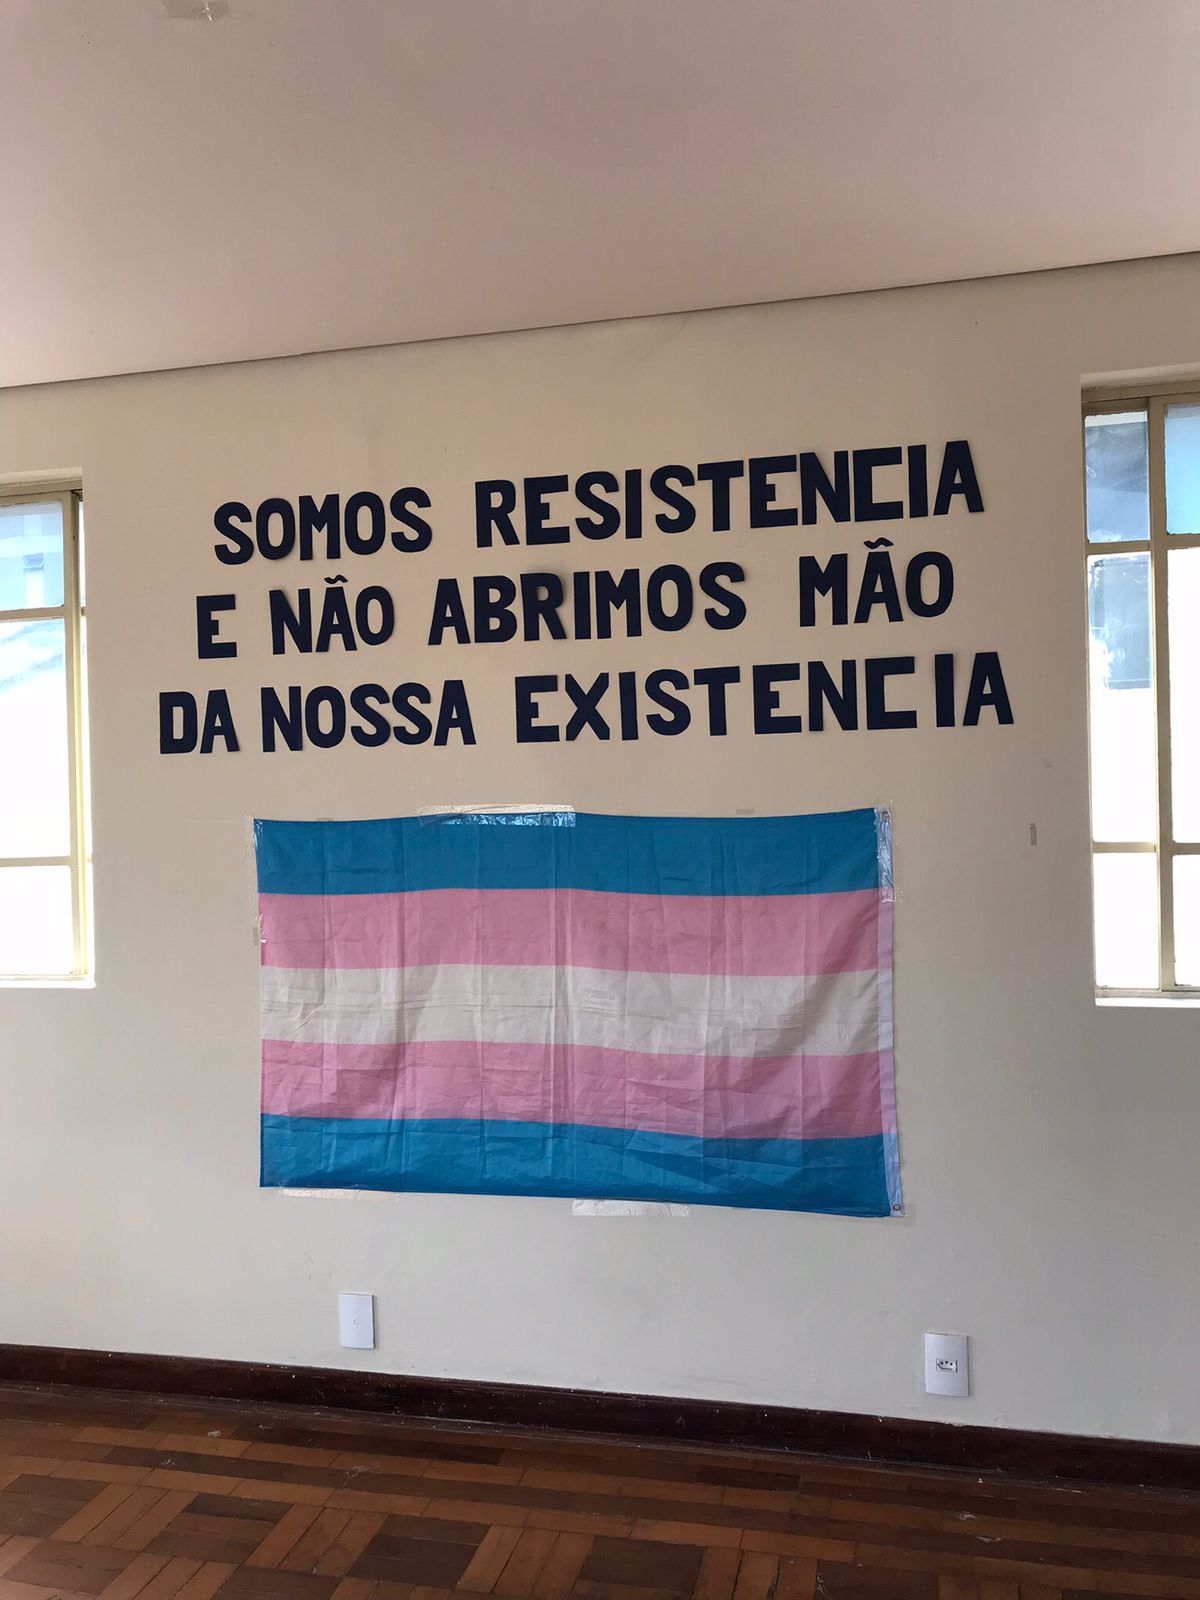 Foto da parede decorada com uma frase escrita em preto “Somos resistência e não abrimos mão da nossa existência” e logo a baixo a bandeira de representatividade trans 